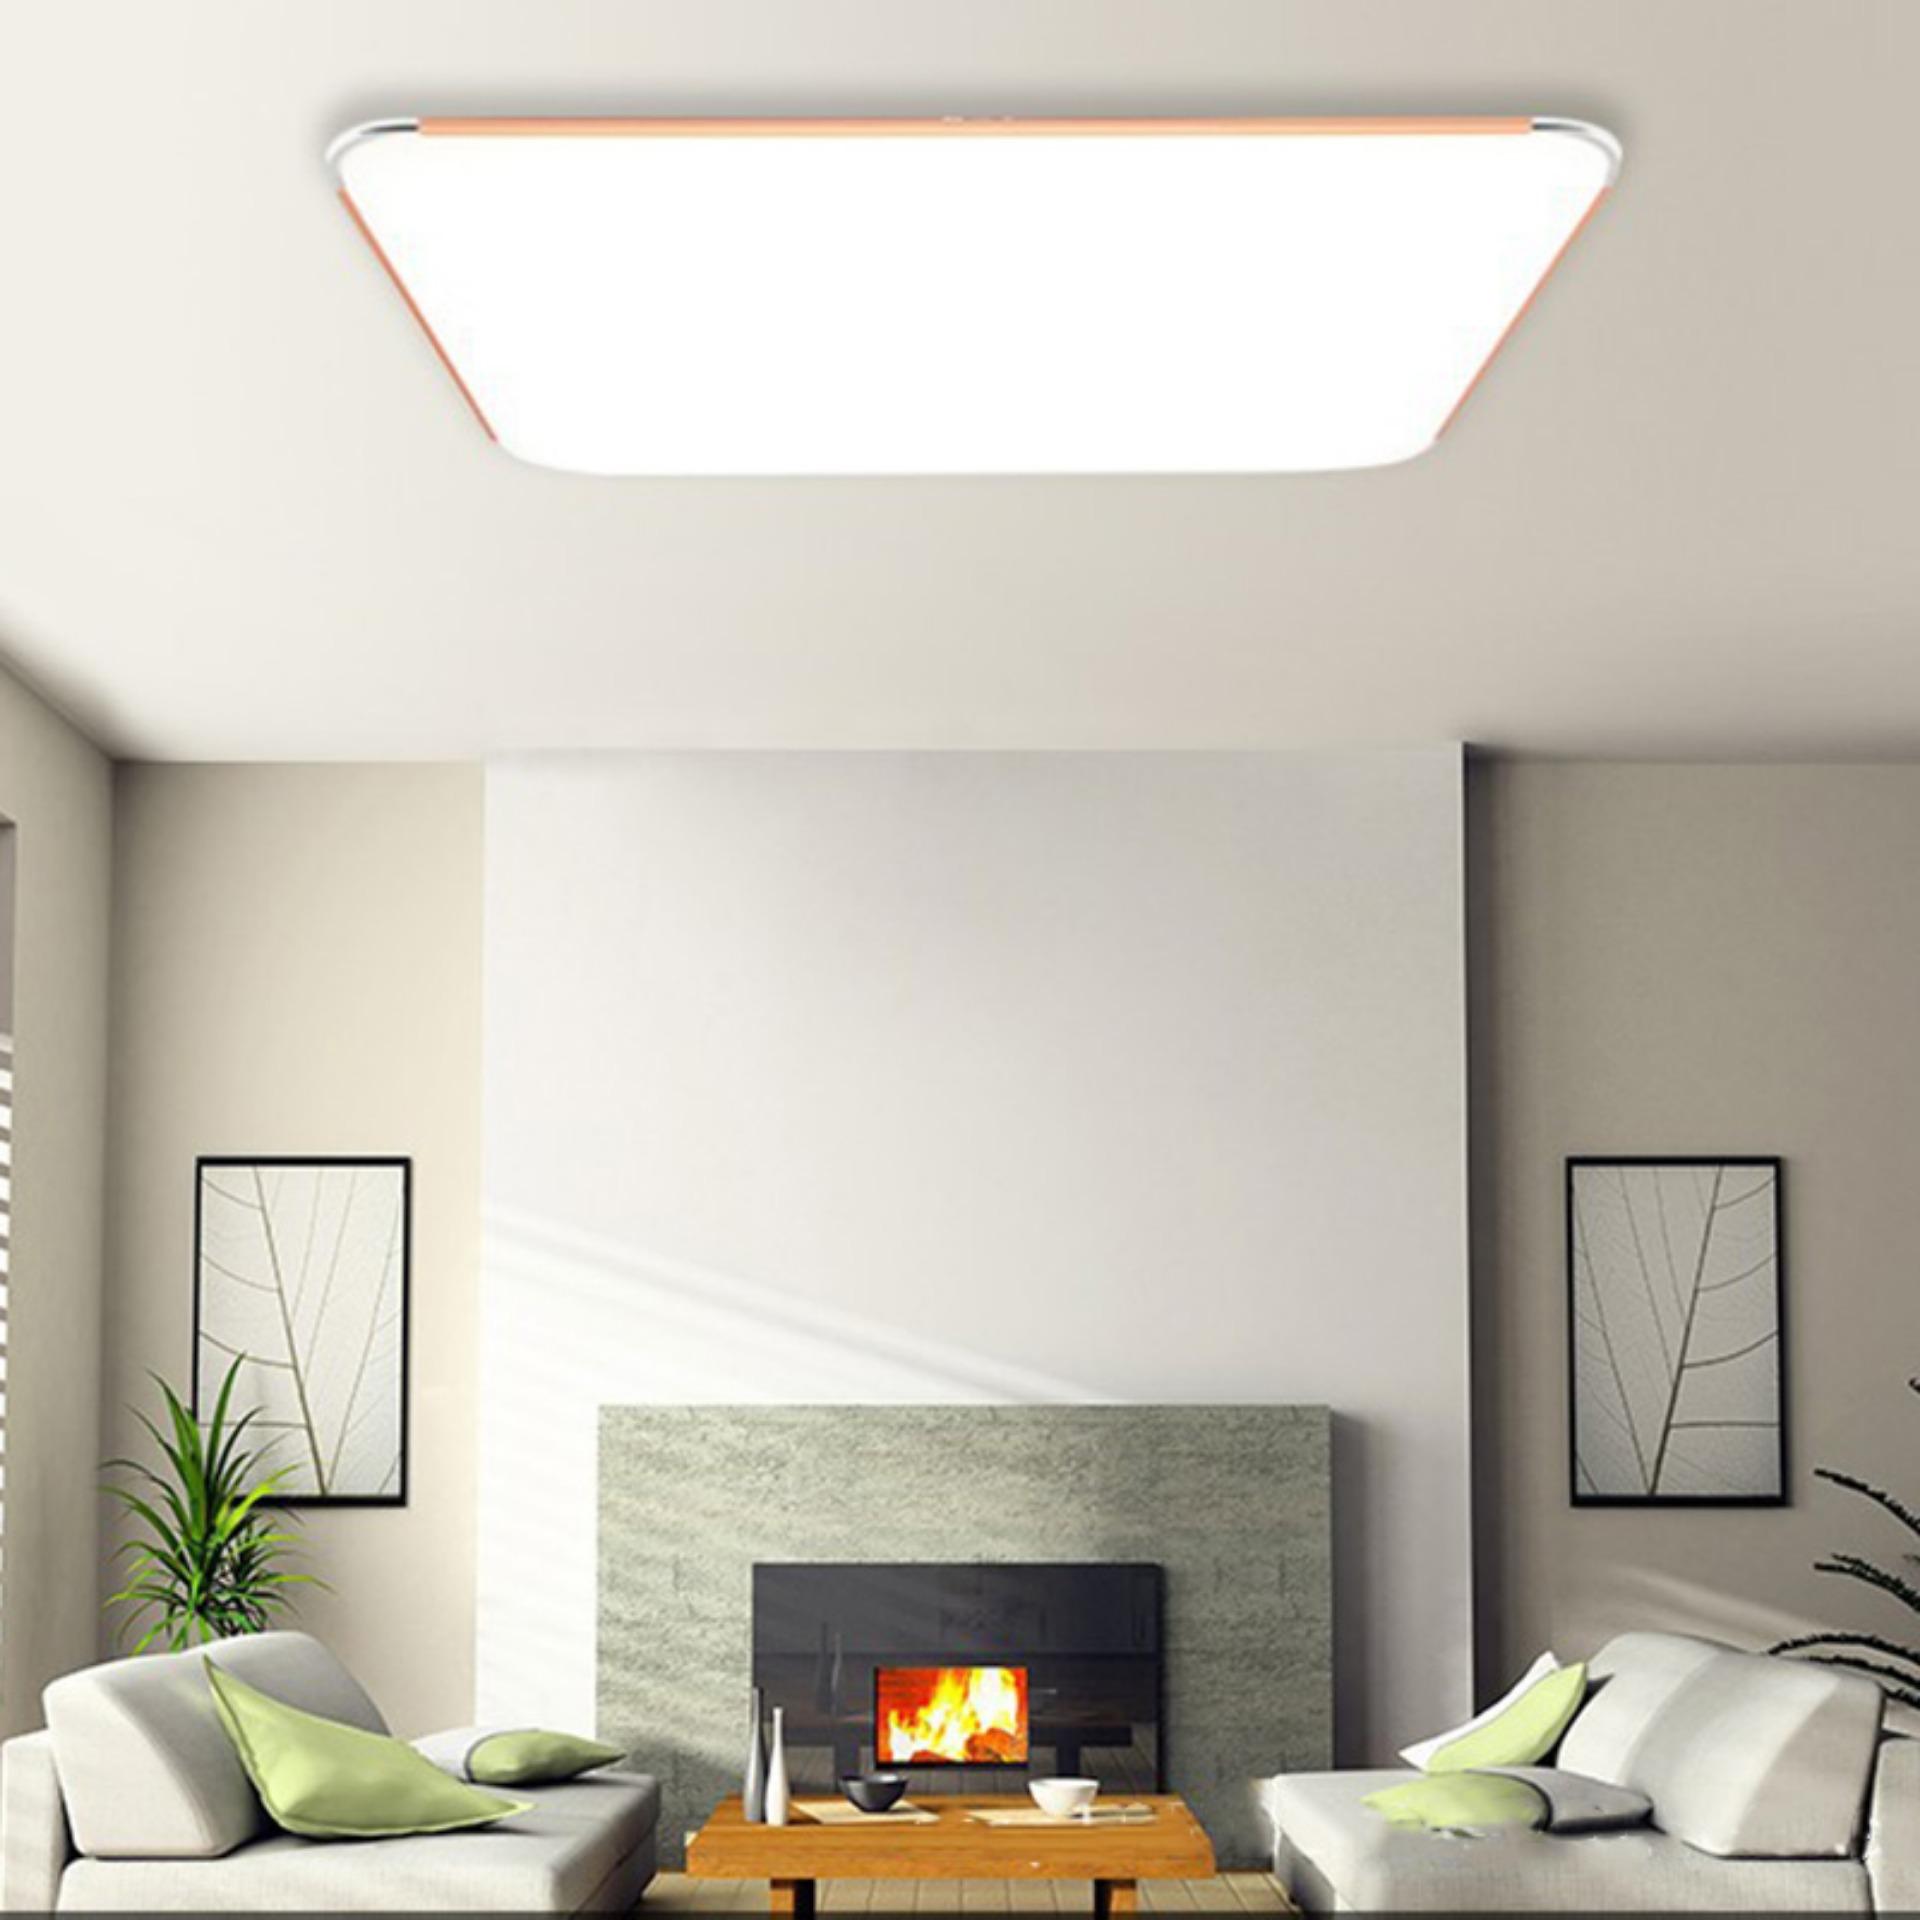 Newworldmall LED Panel Ceiling Light Kitchen Living Room Flush Lamp Downlight 15W Warm White - intl